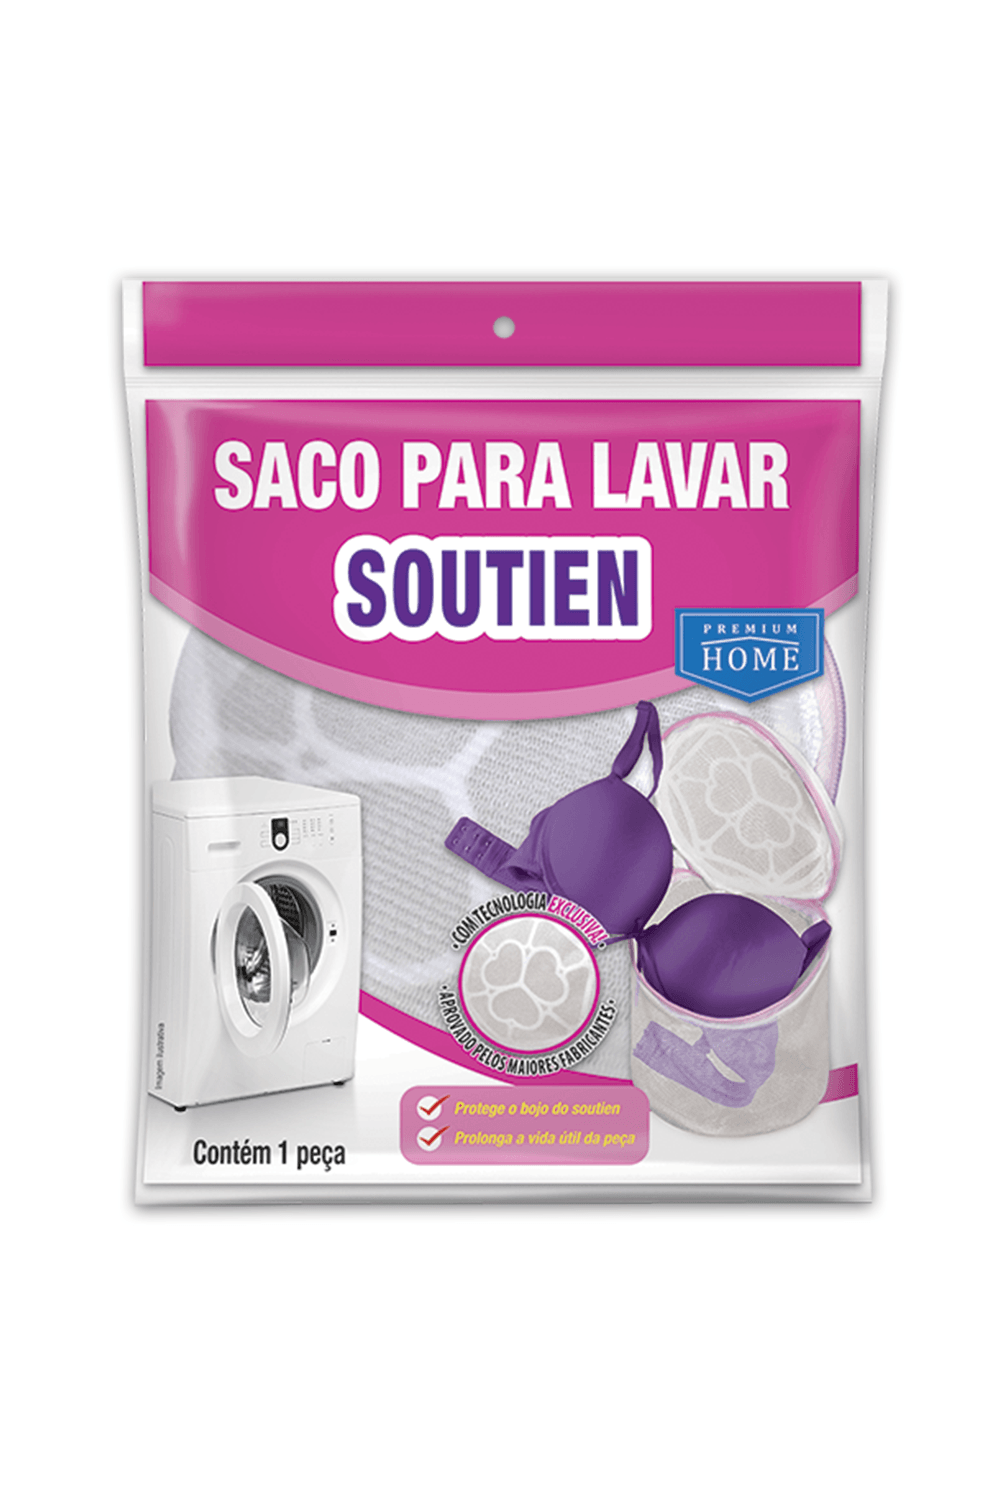 Saco p/ Lavar Soutien